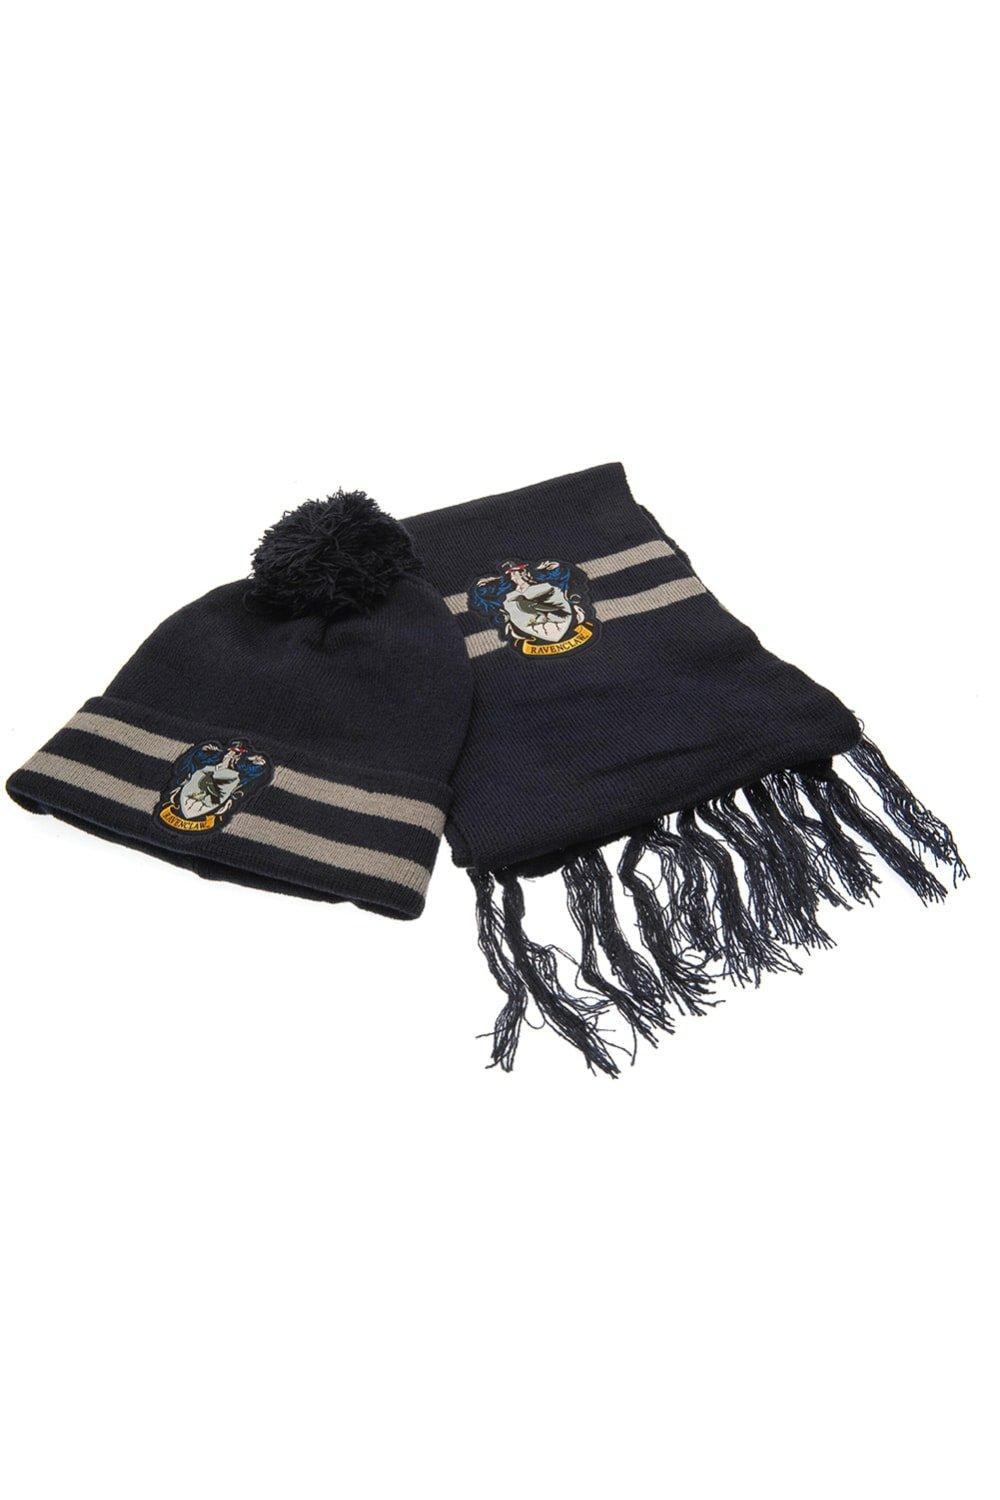 Комплект шляпы и шарфа Рейвенкло Harry Potter, темно-синий